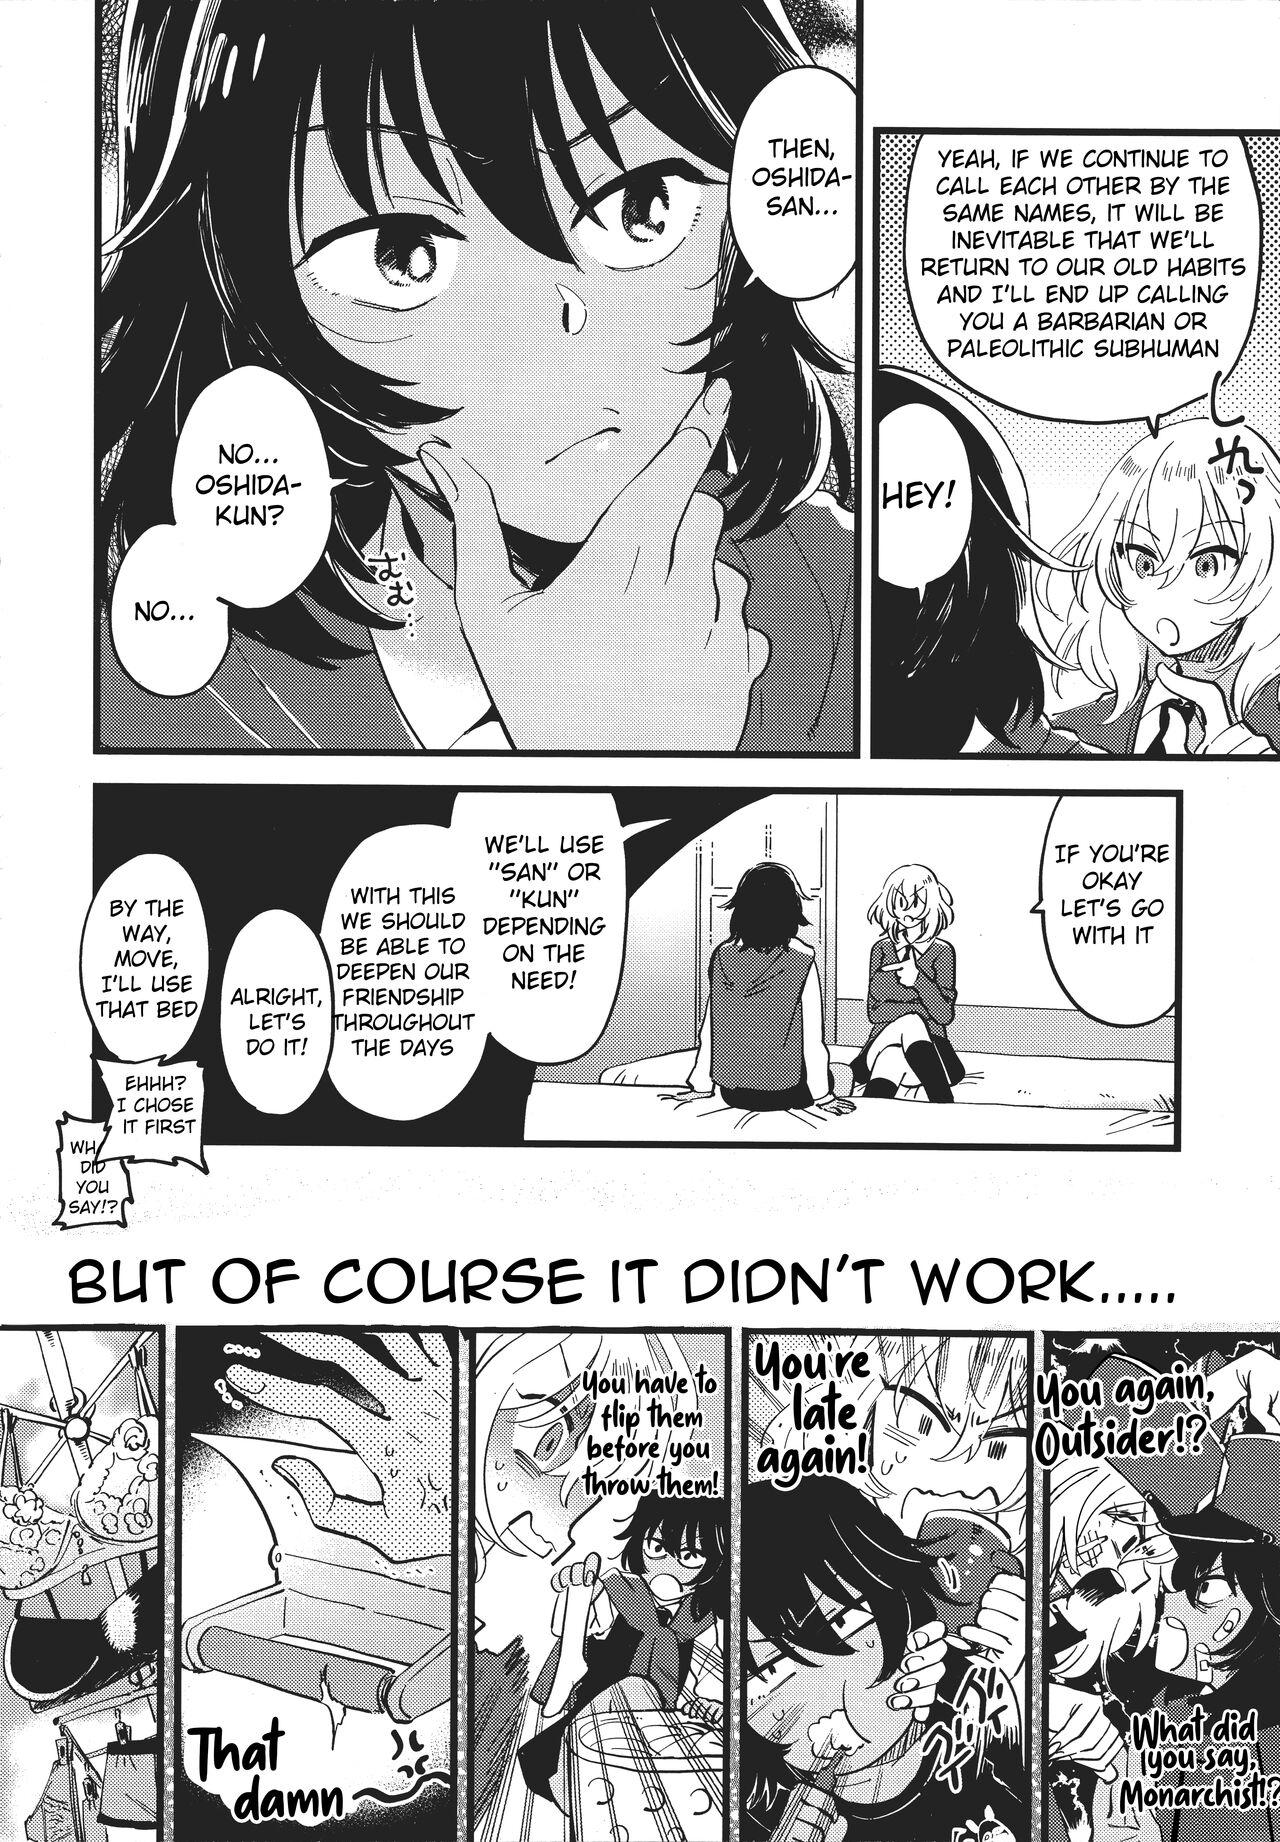 Longhair AnOshi, Nakayoku! - Girls und panzer Fetish - Page 5